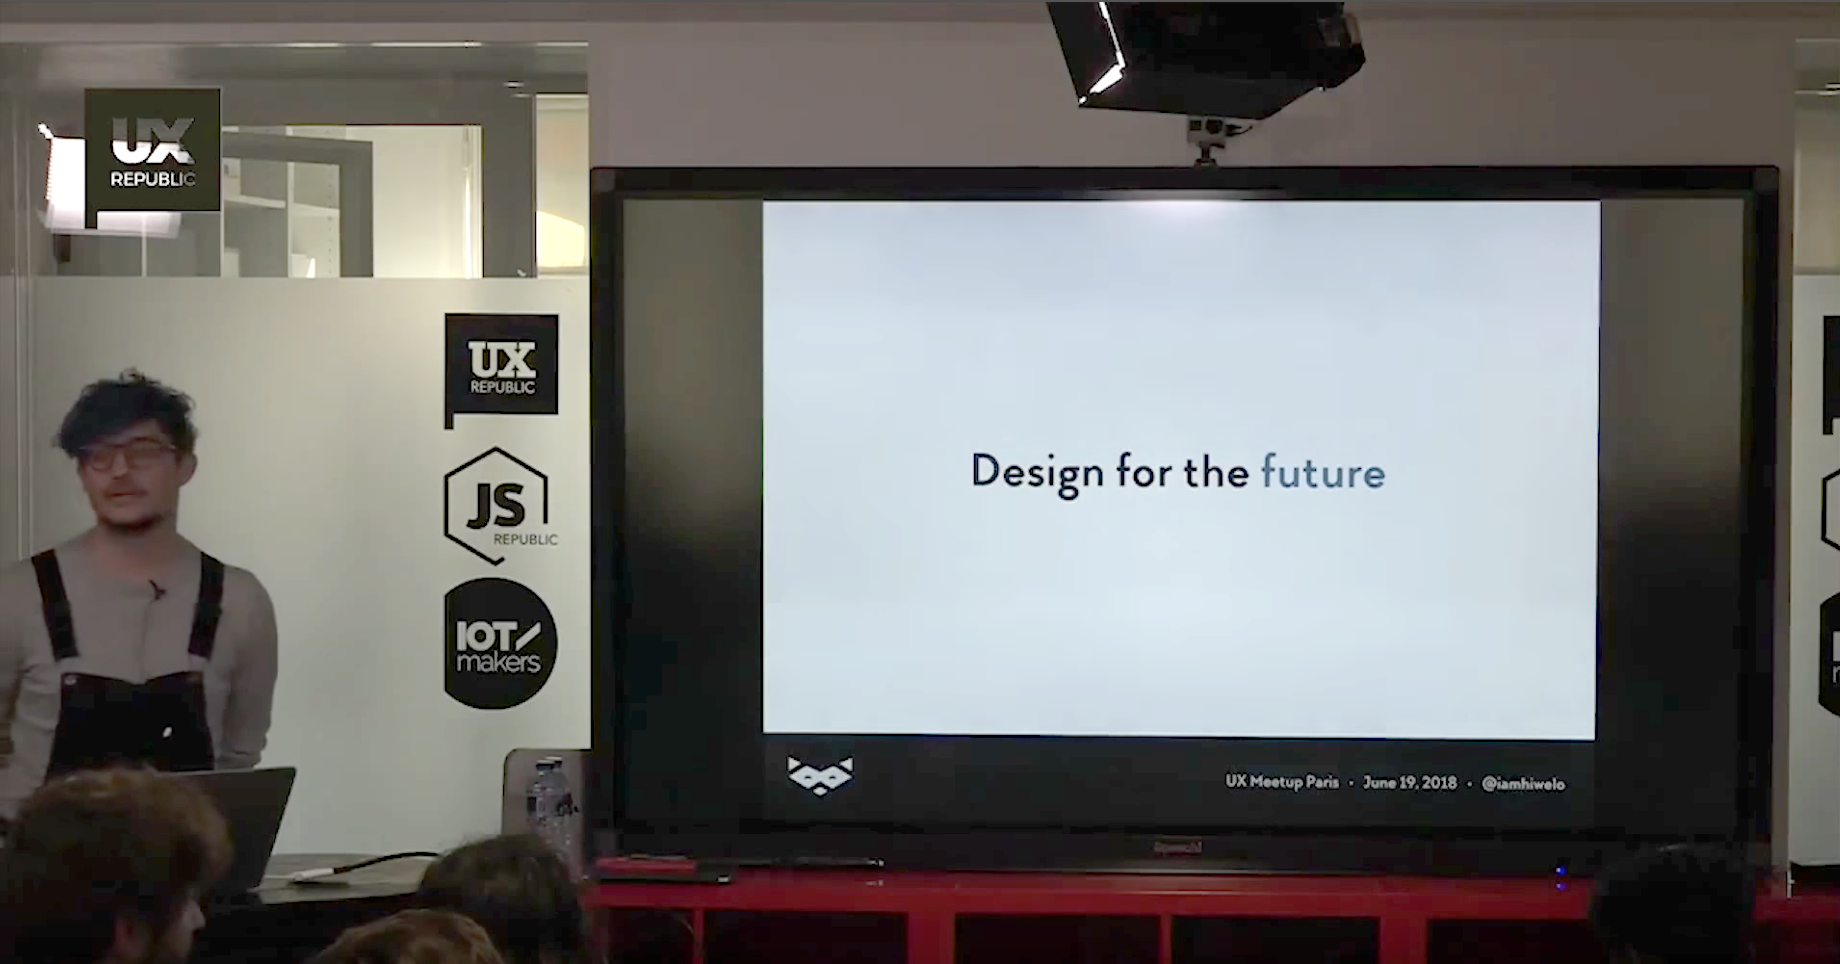 Damien Senger UX Designer pendant le meetup UX et Accessibilité chez UX Republic, slide Design for the future